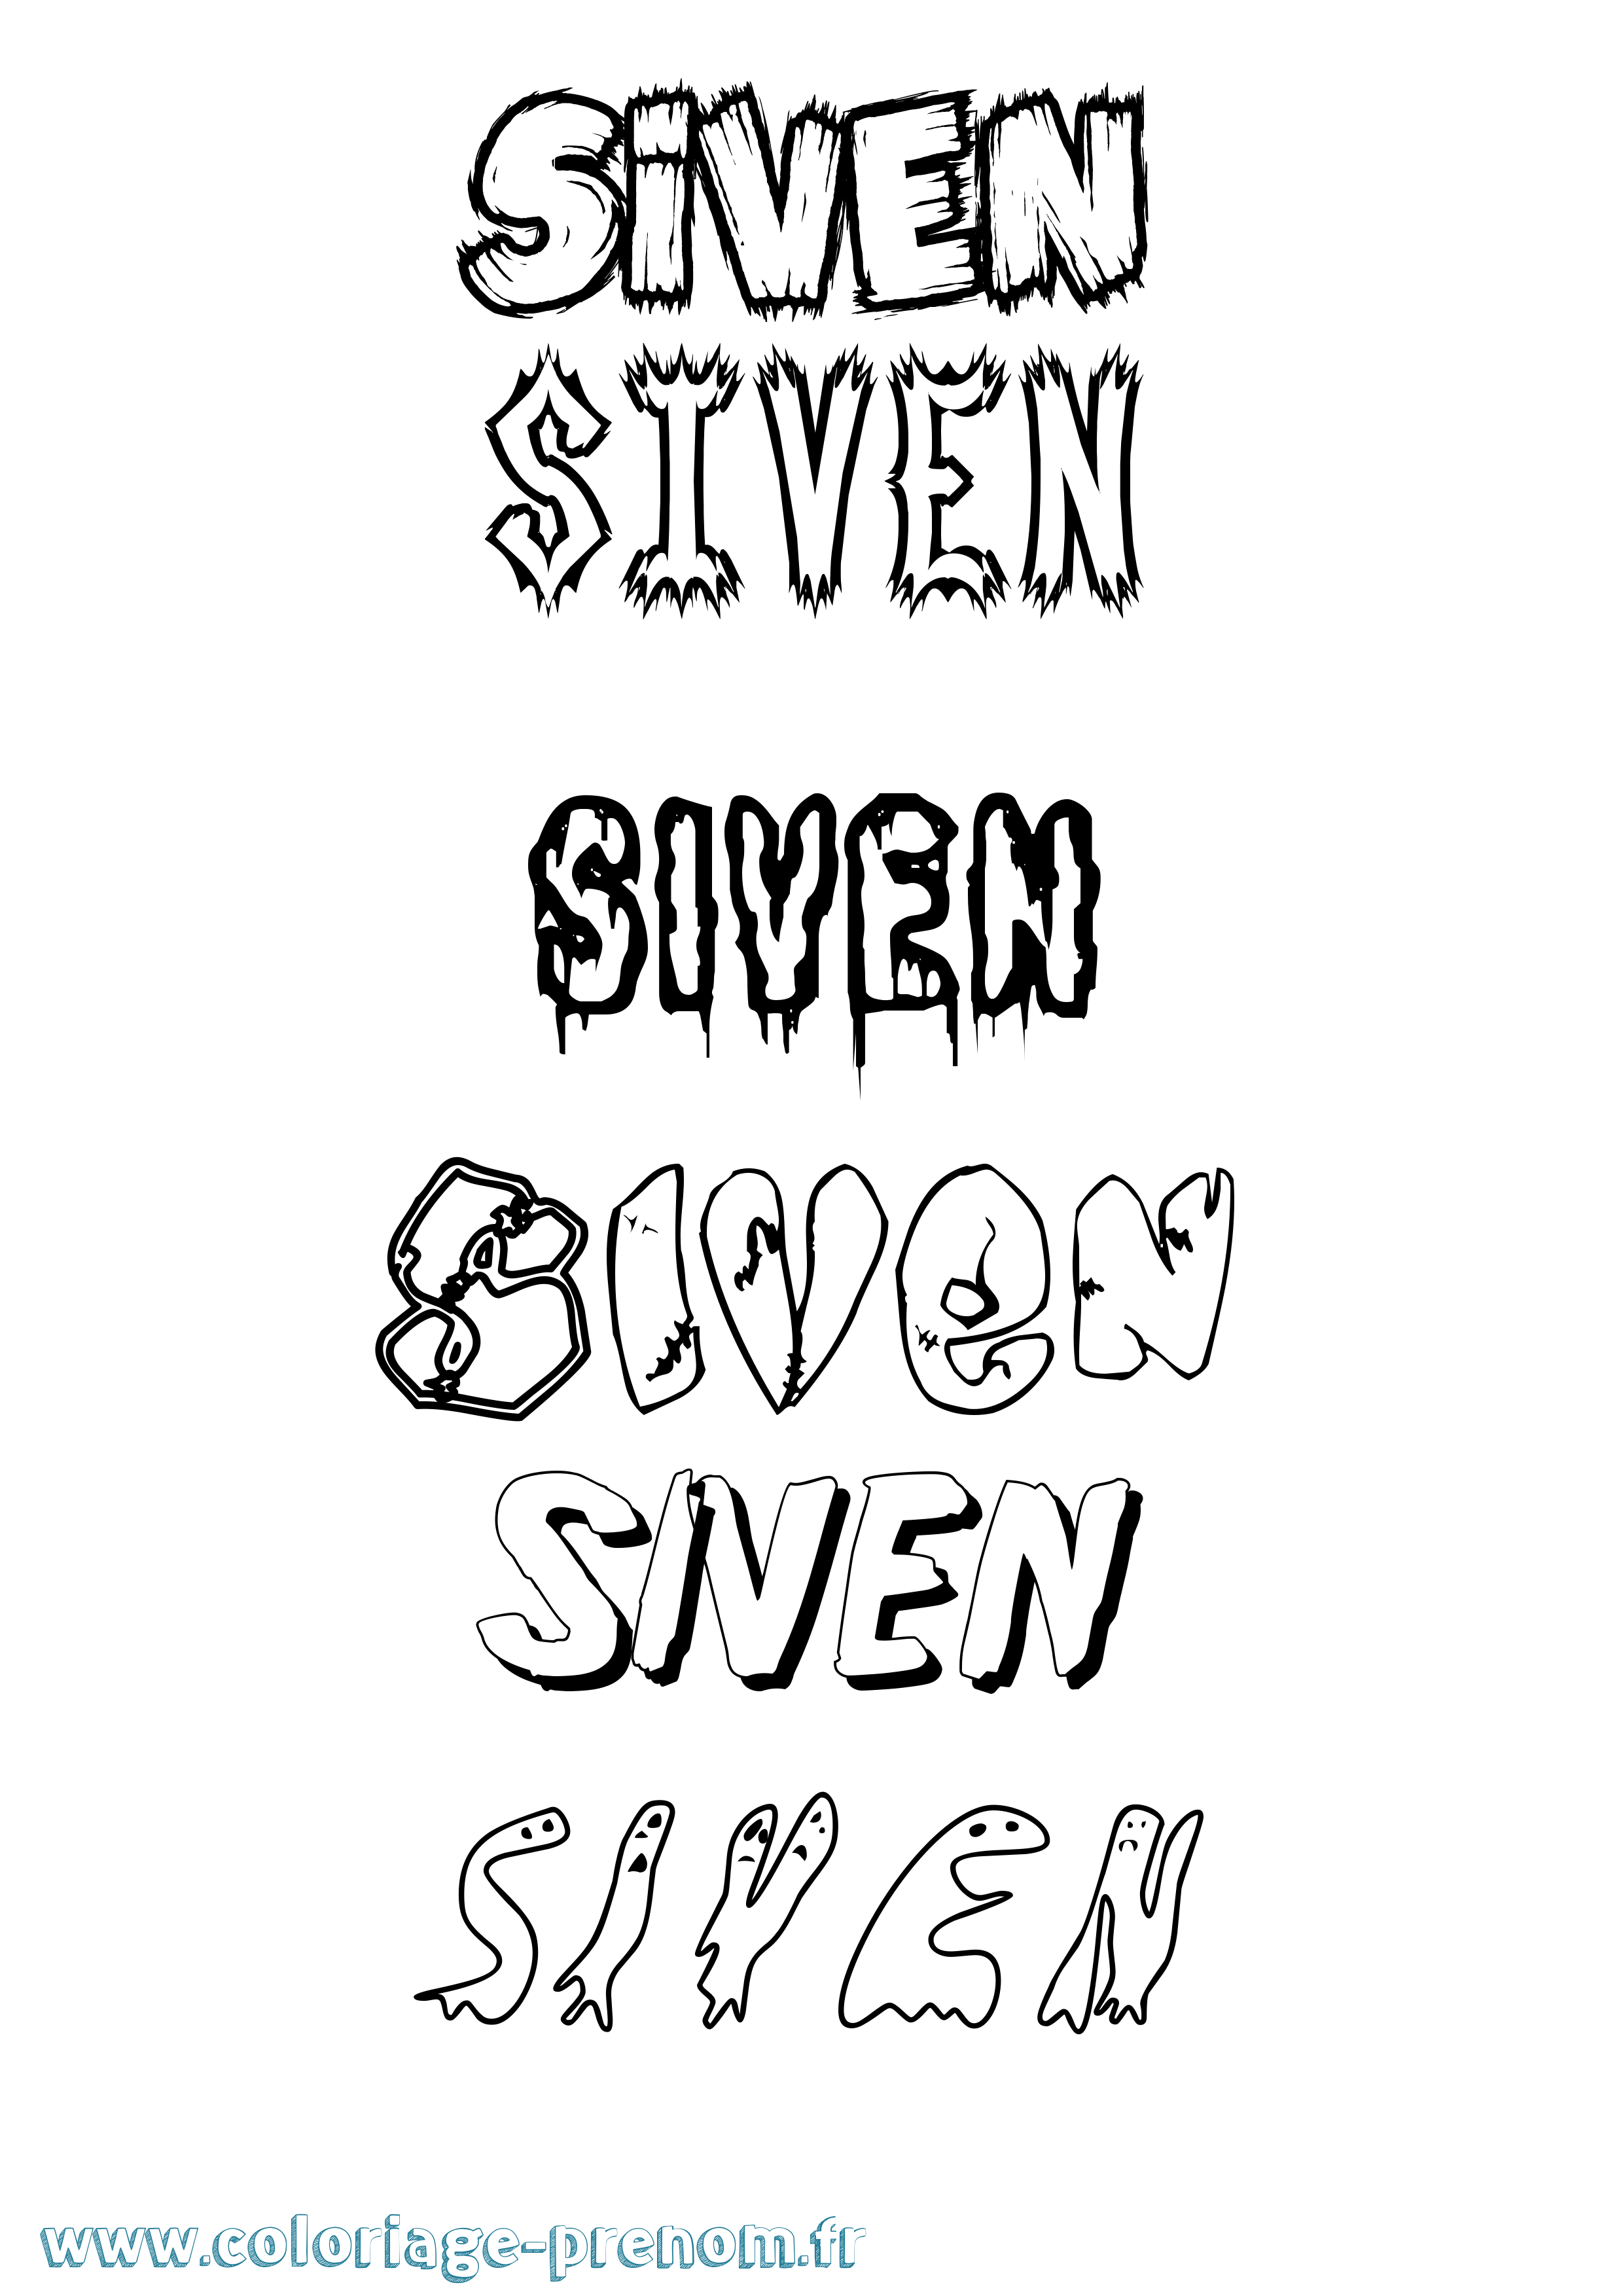 Coloriage prénom Siven Frisson